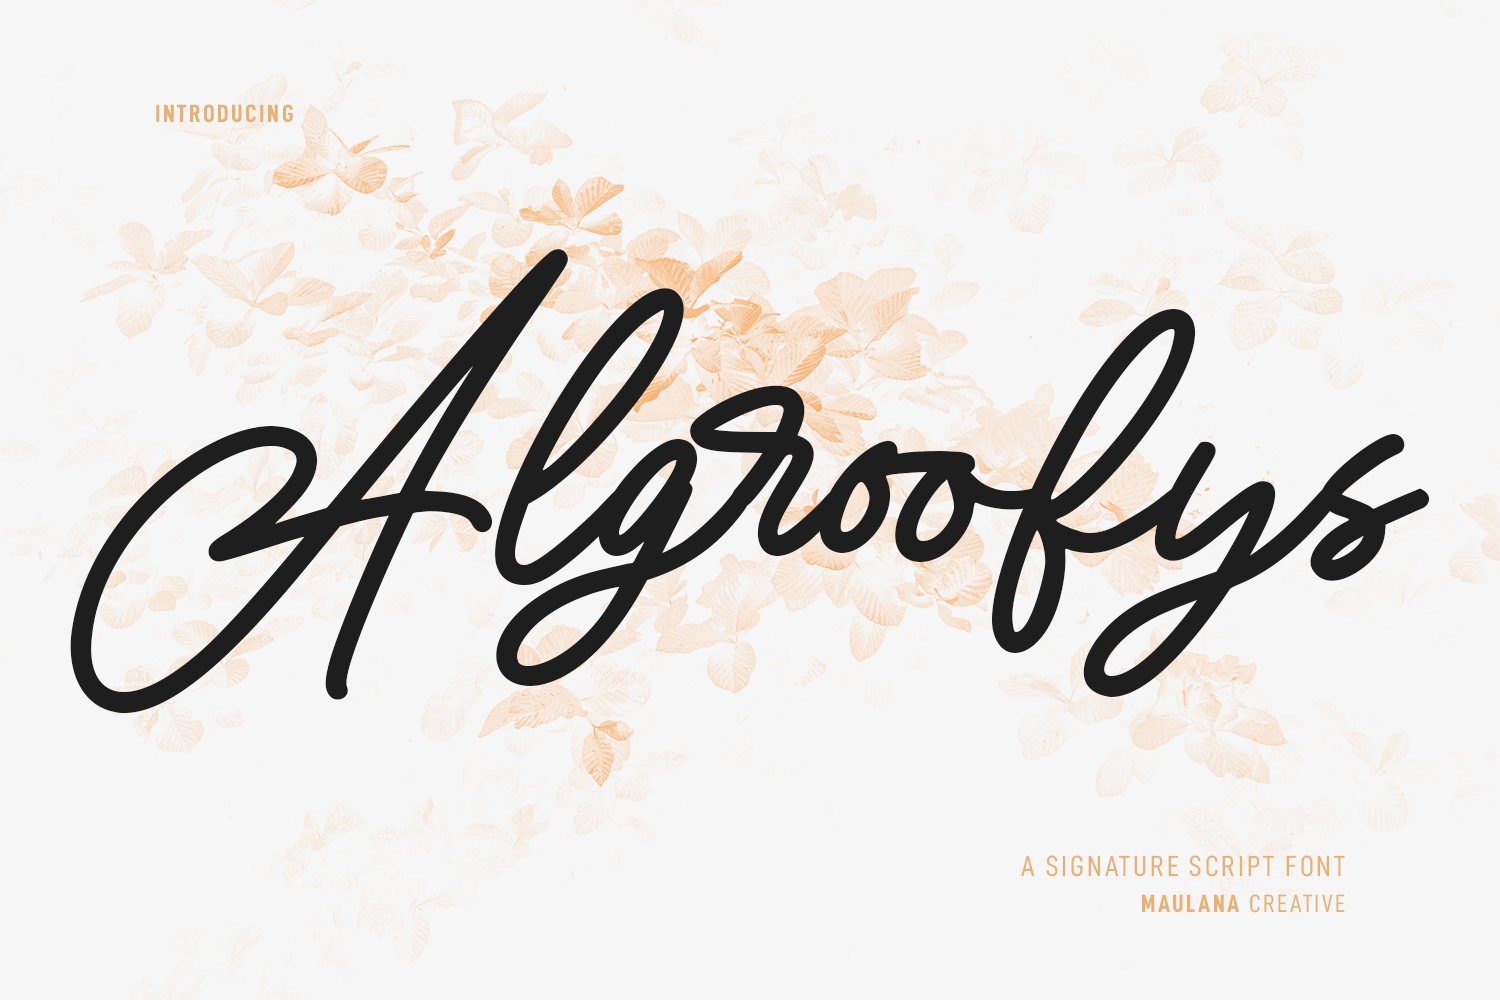 Algroofys Signature Script Font cover image.